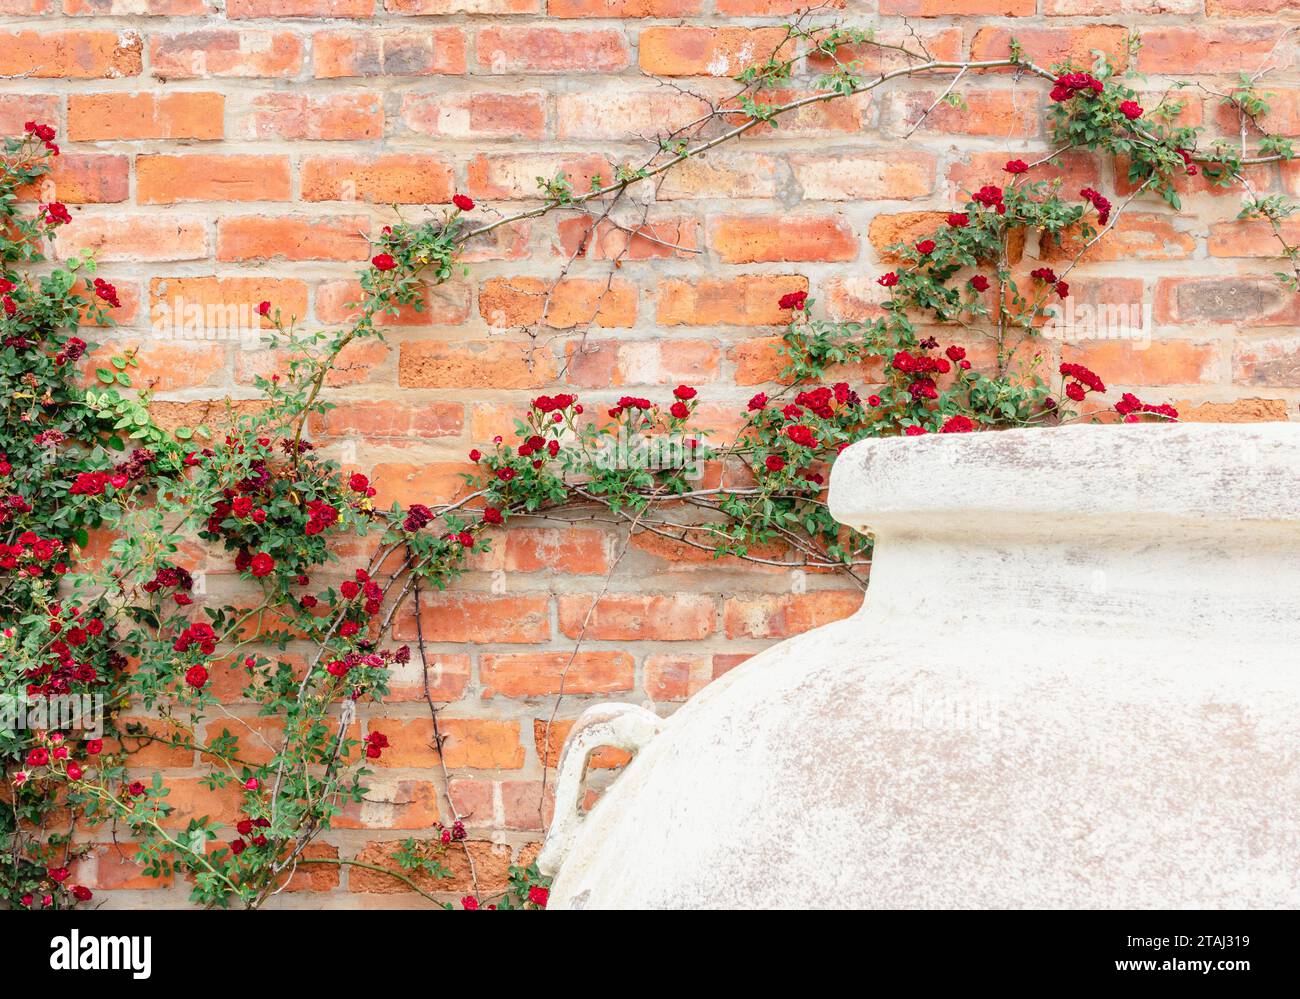 Plante grimpante miniature rose rouge contre mur de briques rouges avec pot de plante blanc Banque D'Images